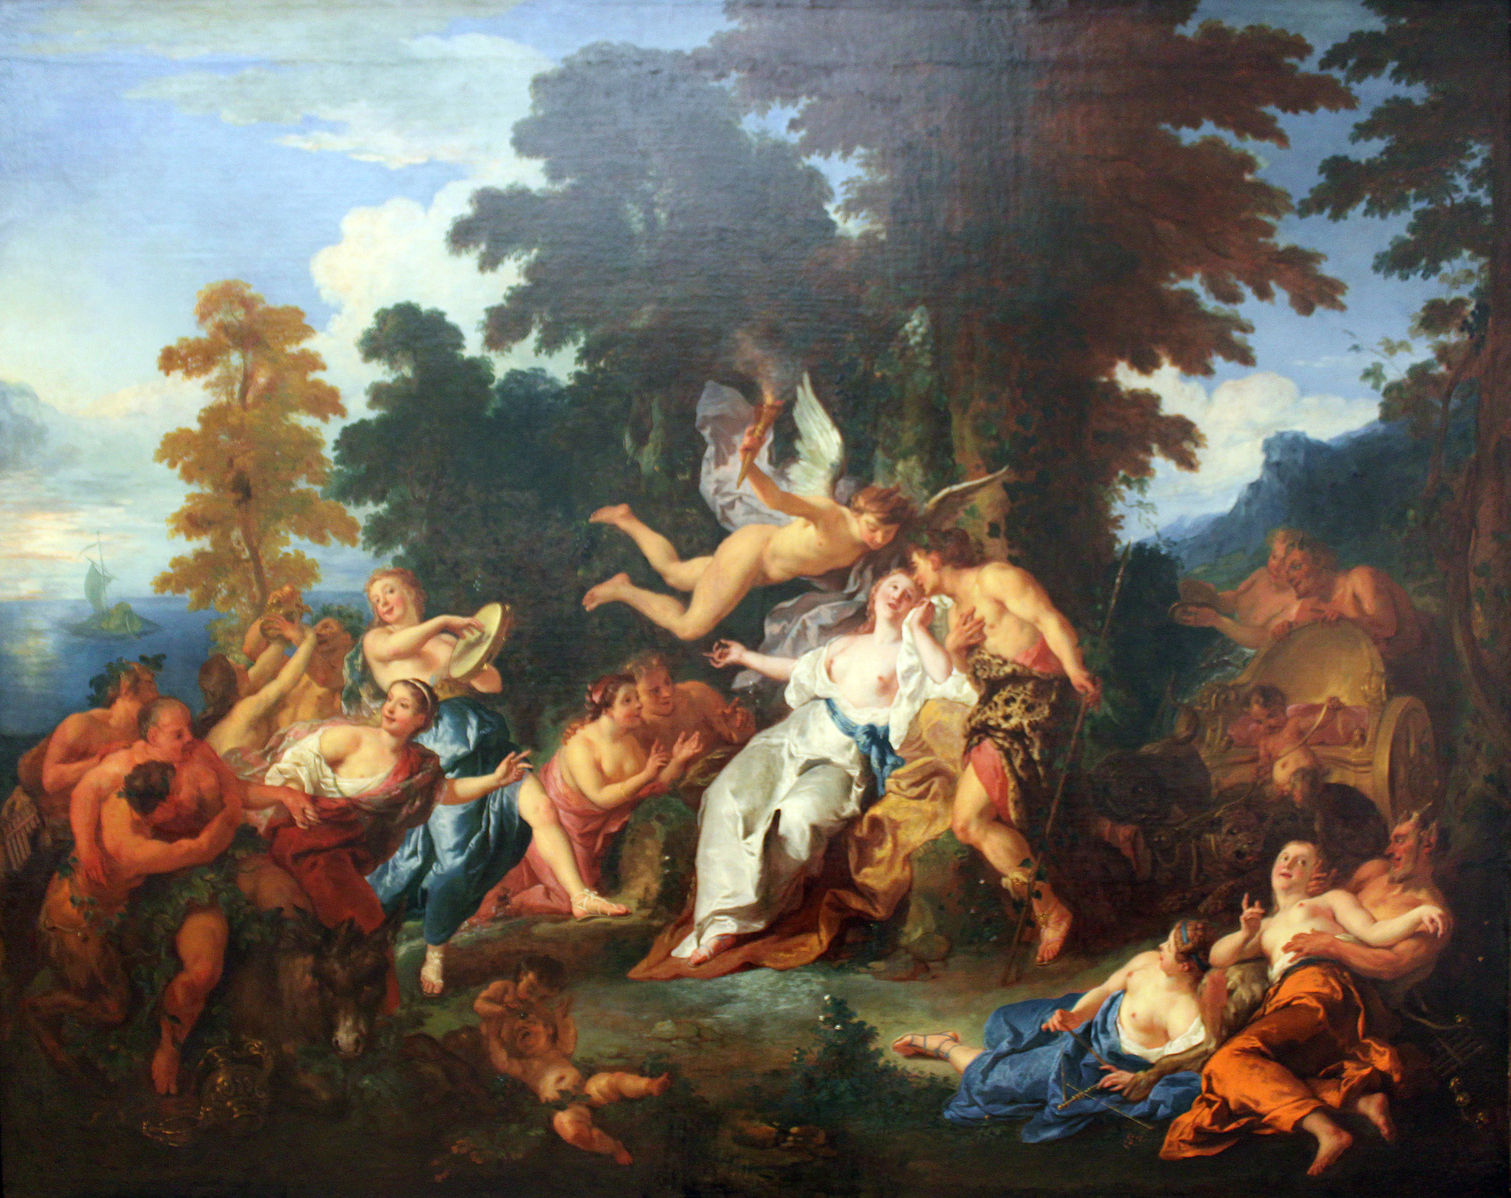 De Troy 1717 Bacchus recueillant Ariane dans l'île de Naxos Gemaldegalerie Berlin